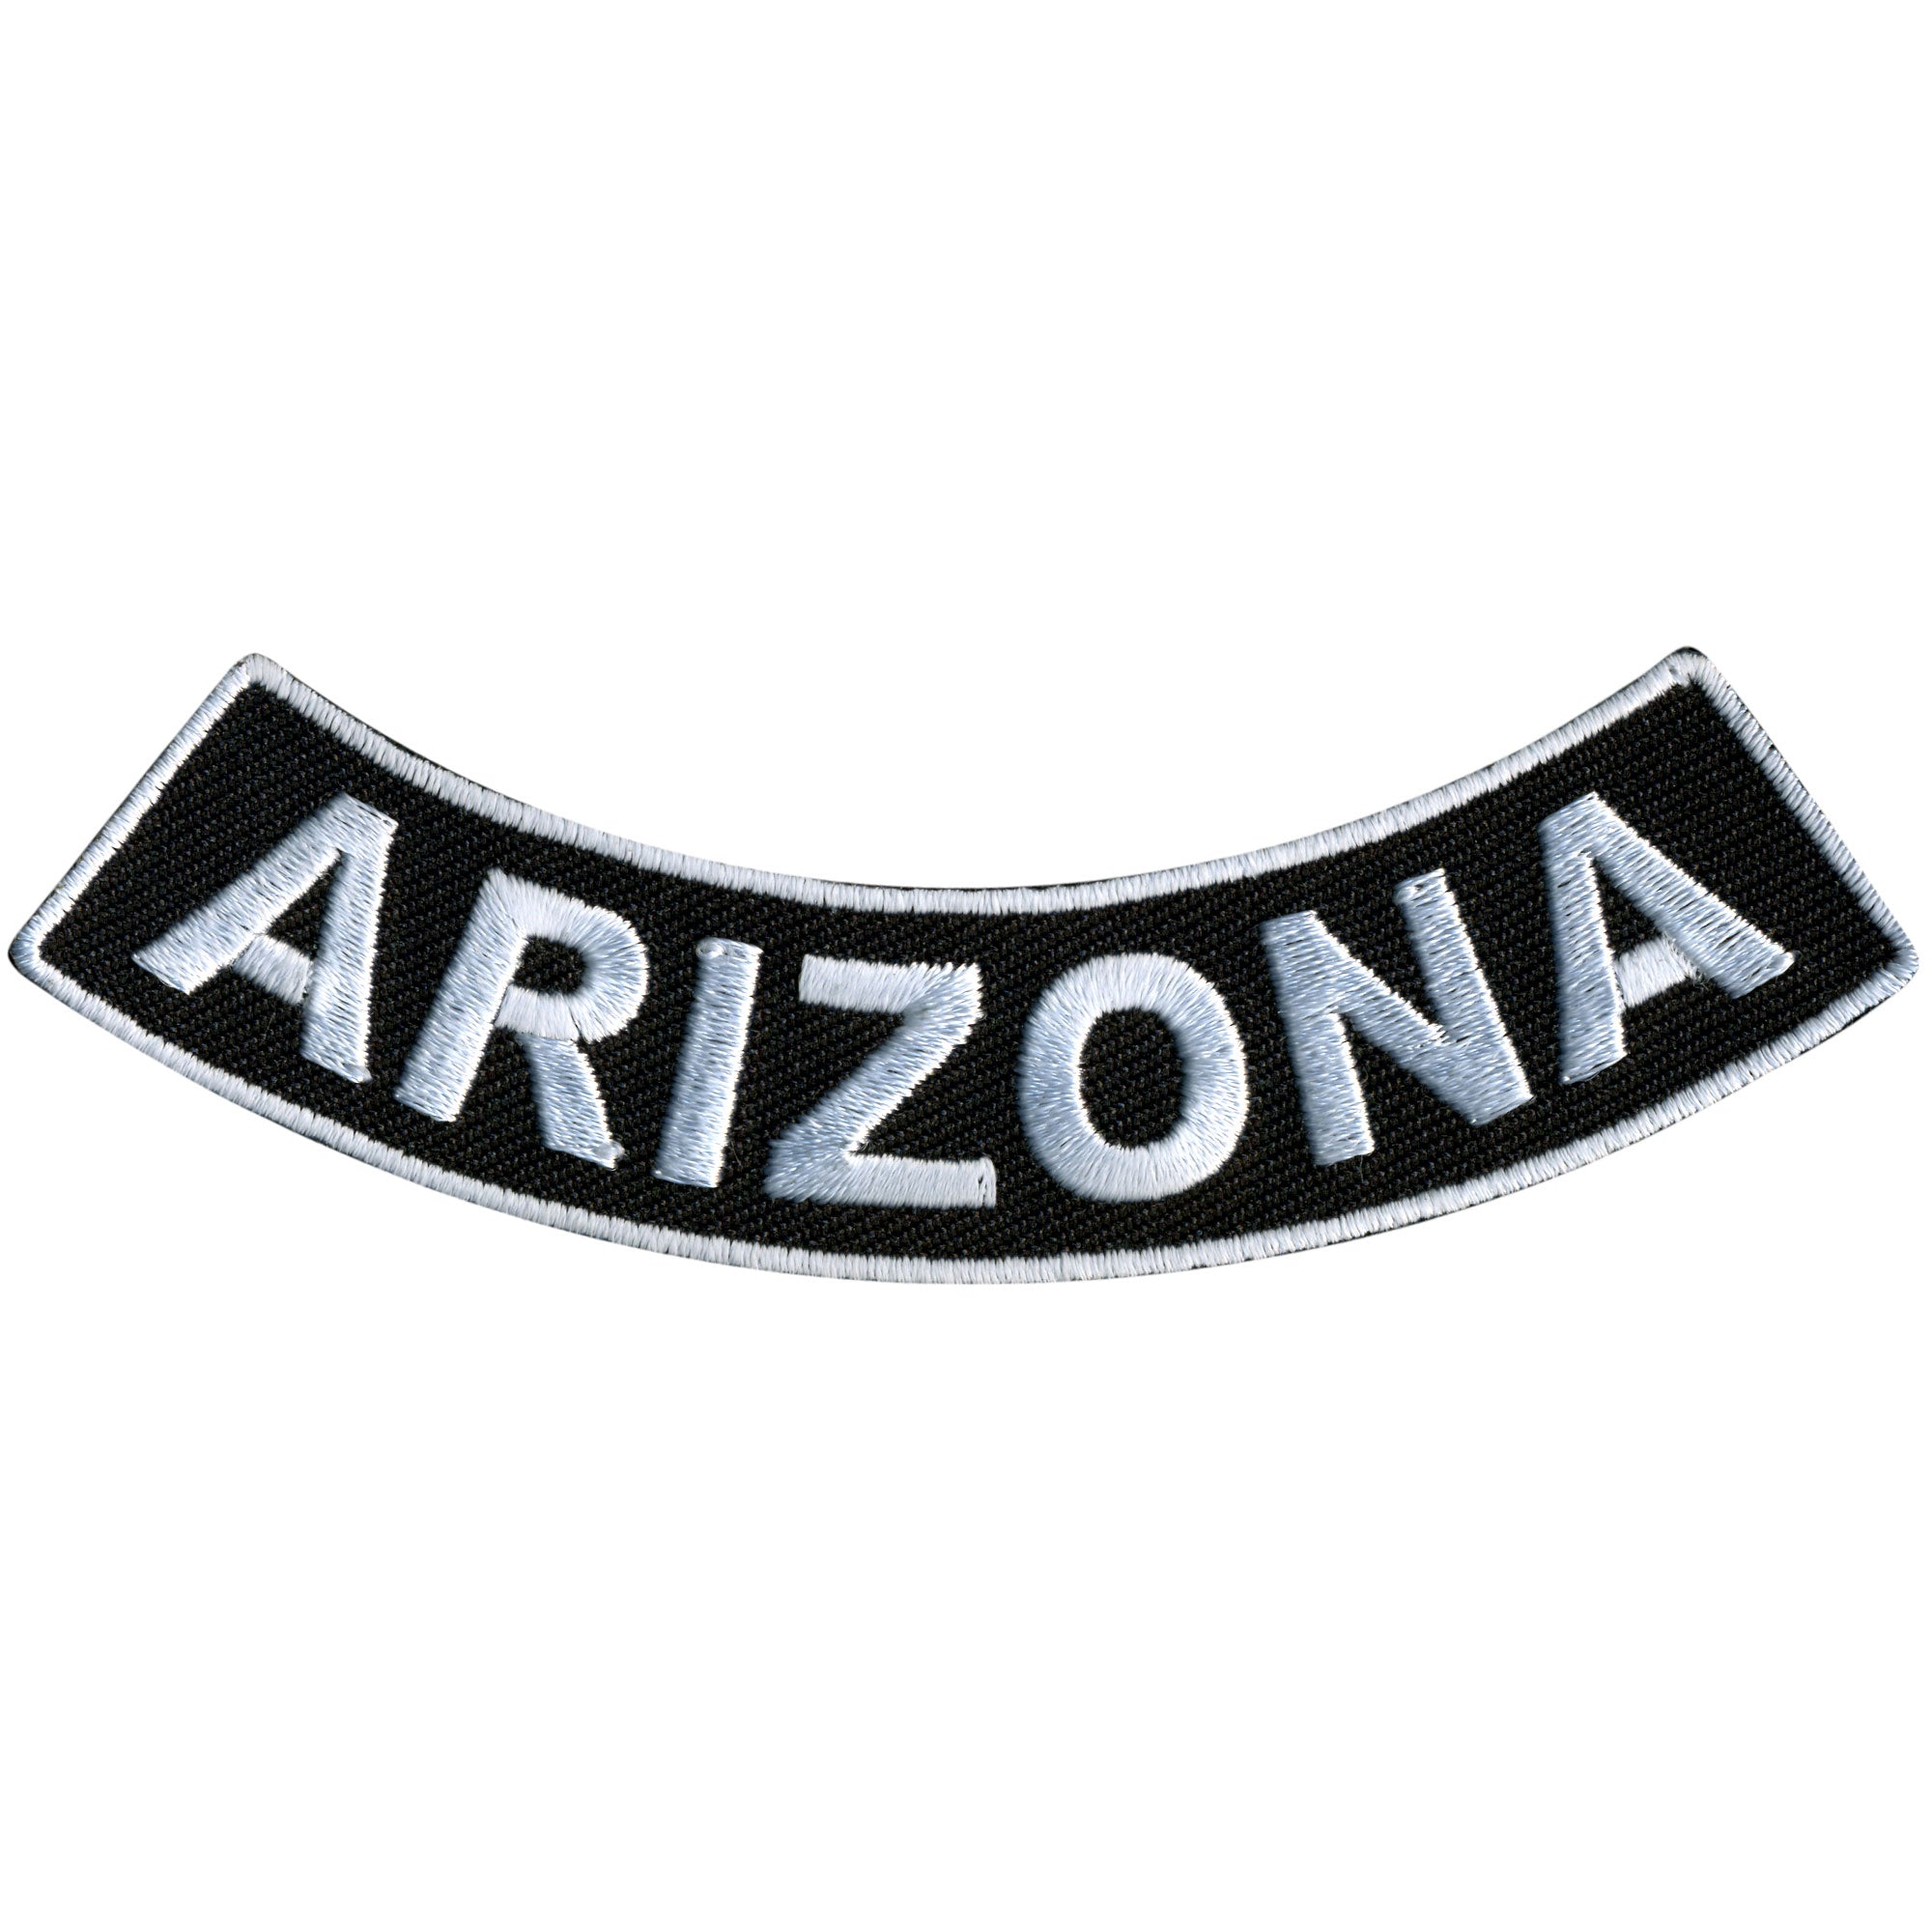 Hot Leathers Arizona 4” X 1” Bottom Rocker Patch